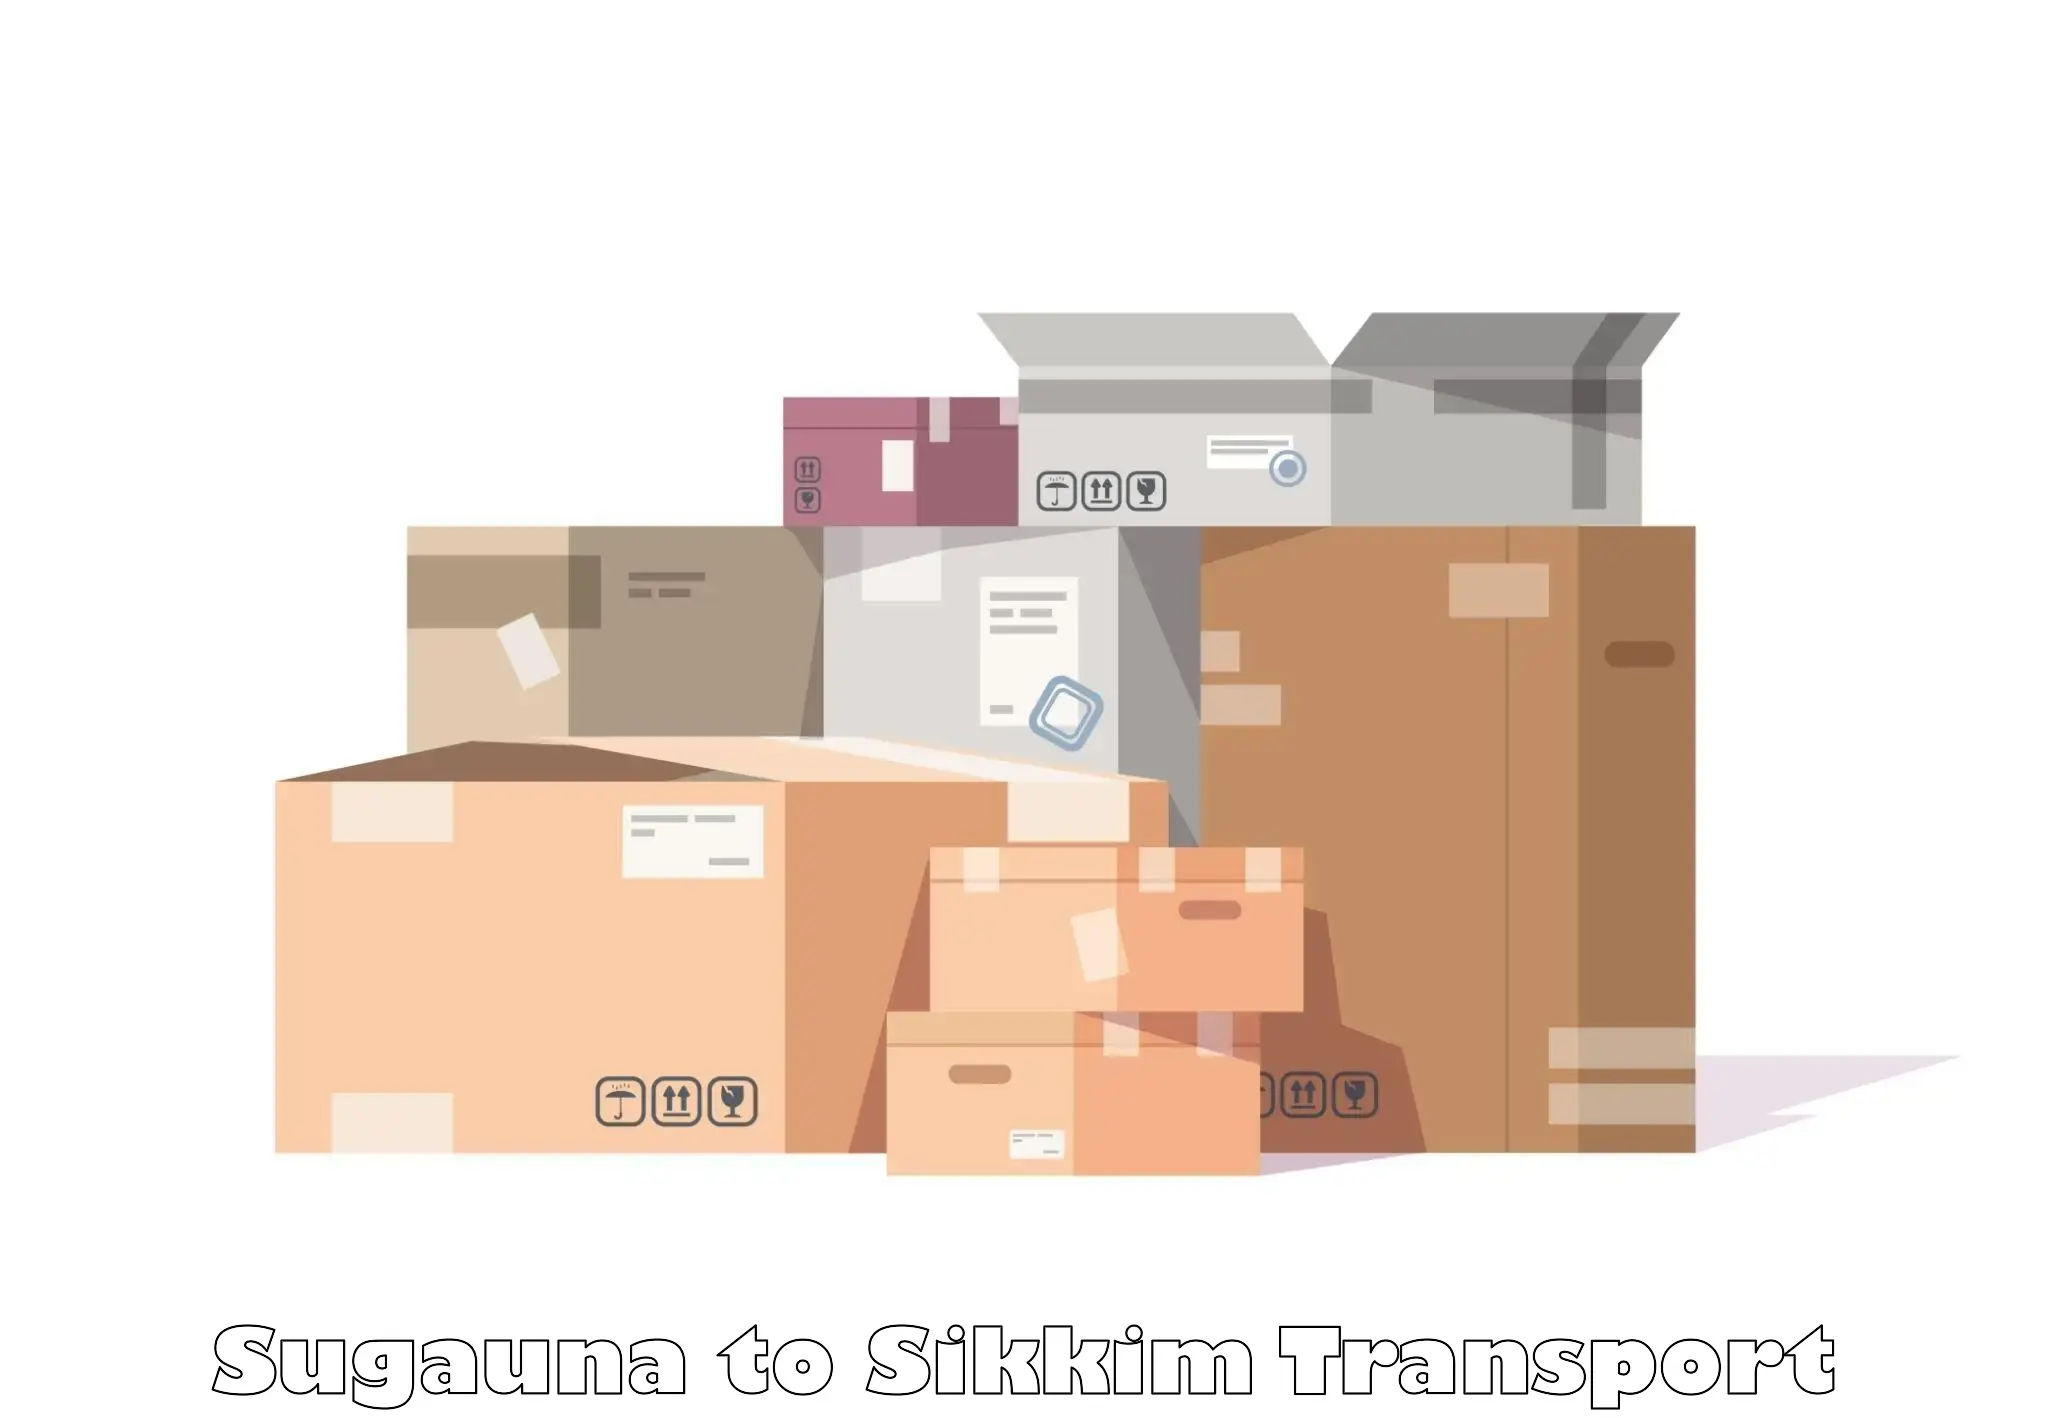 Interstate transport services Sugauna to Sikkim